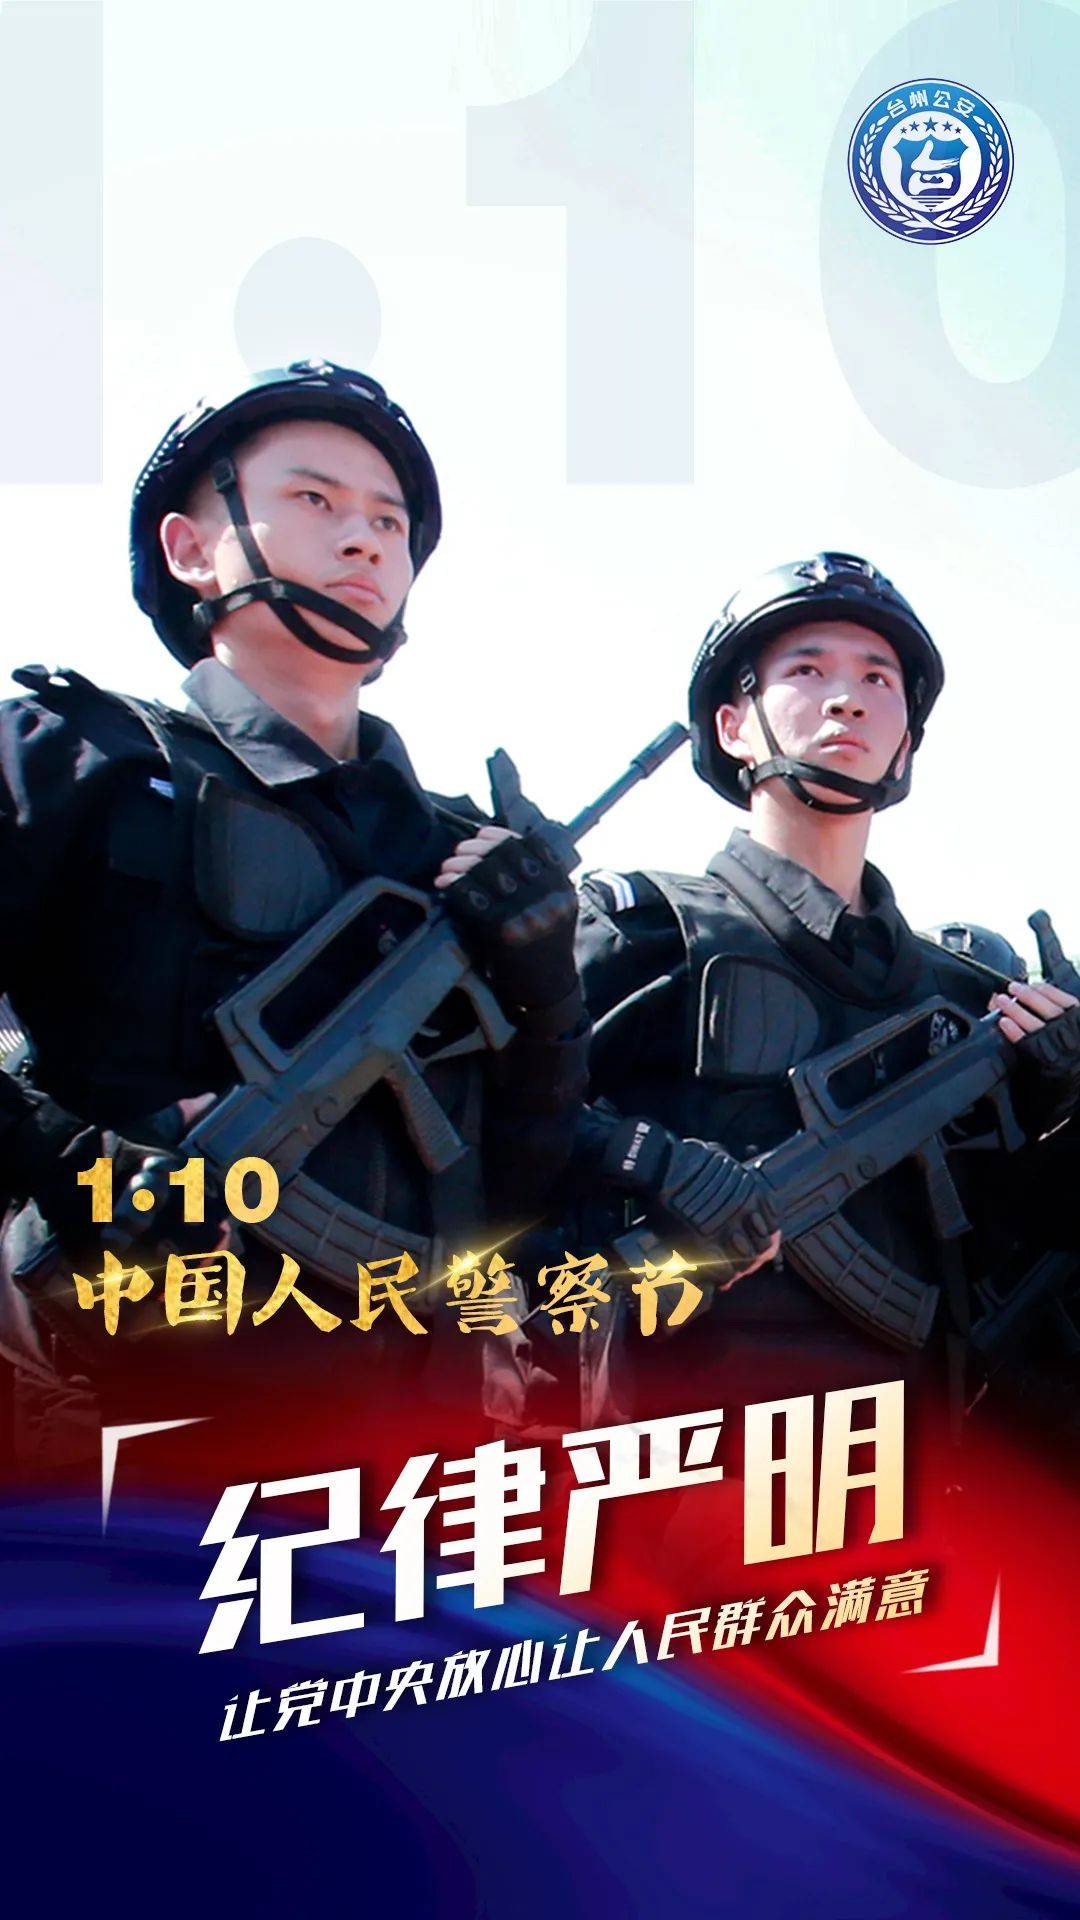 16110中国人民警察节⑥警色闪耀亮台州